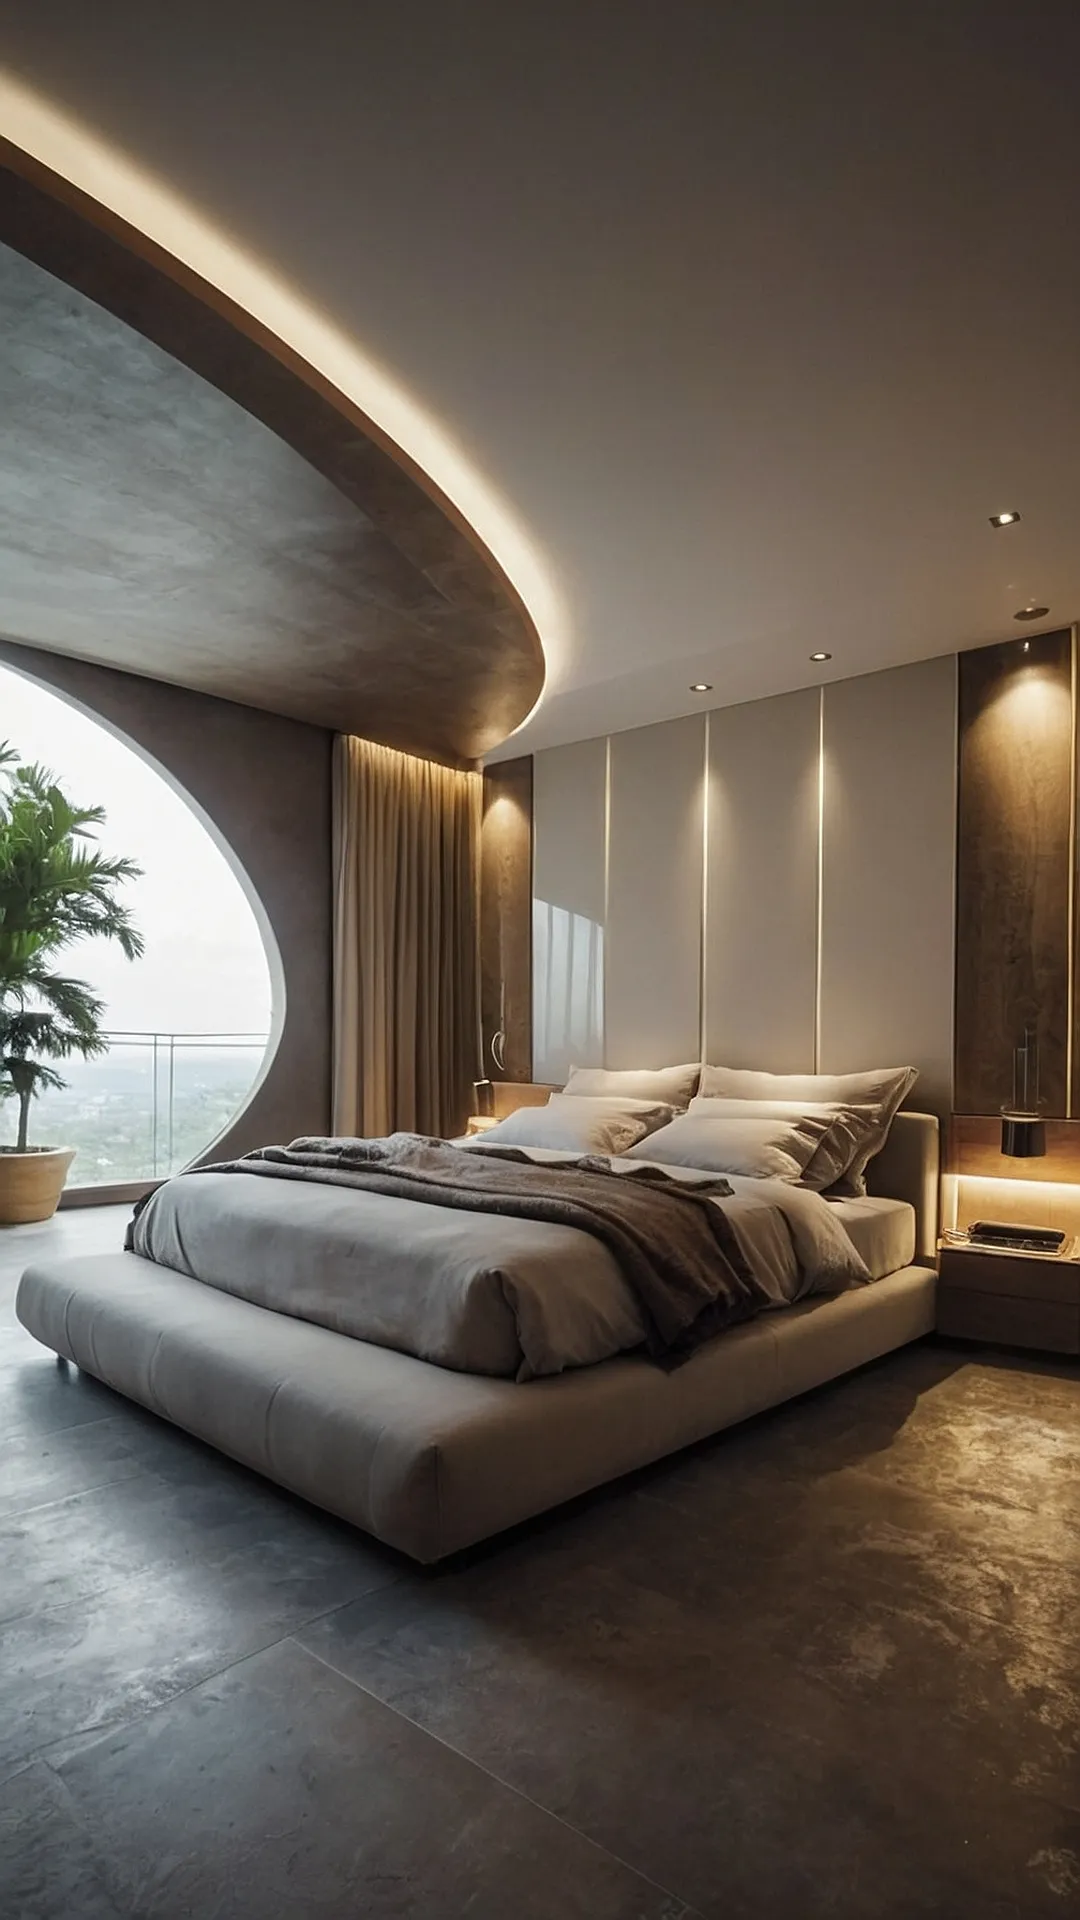 Designer Dreamscapes: Classy Bedroom Inspirations